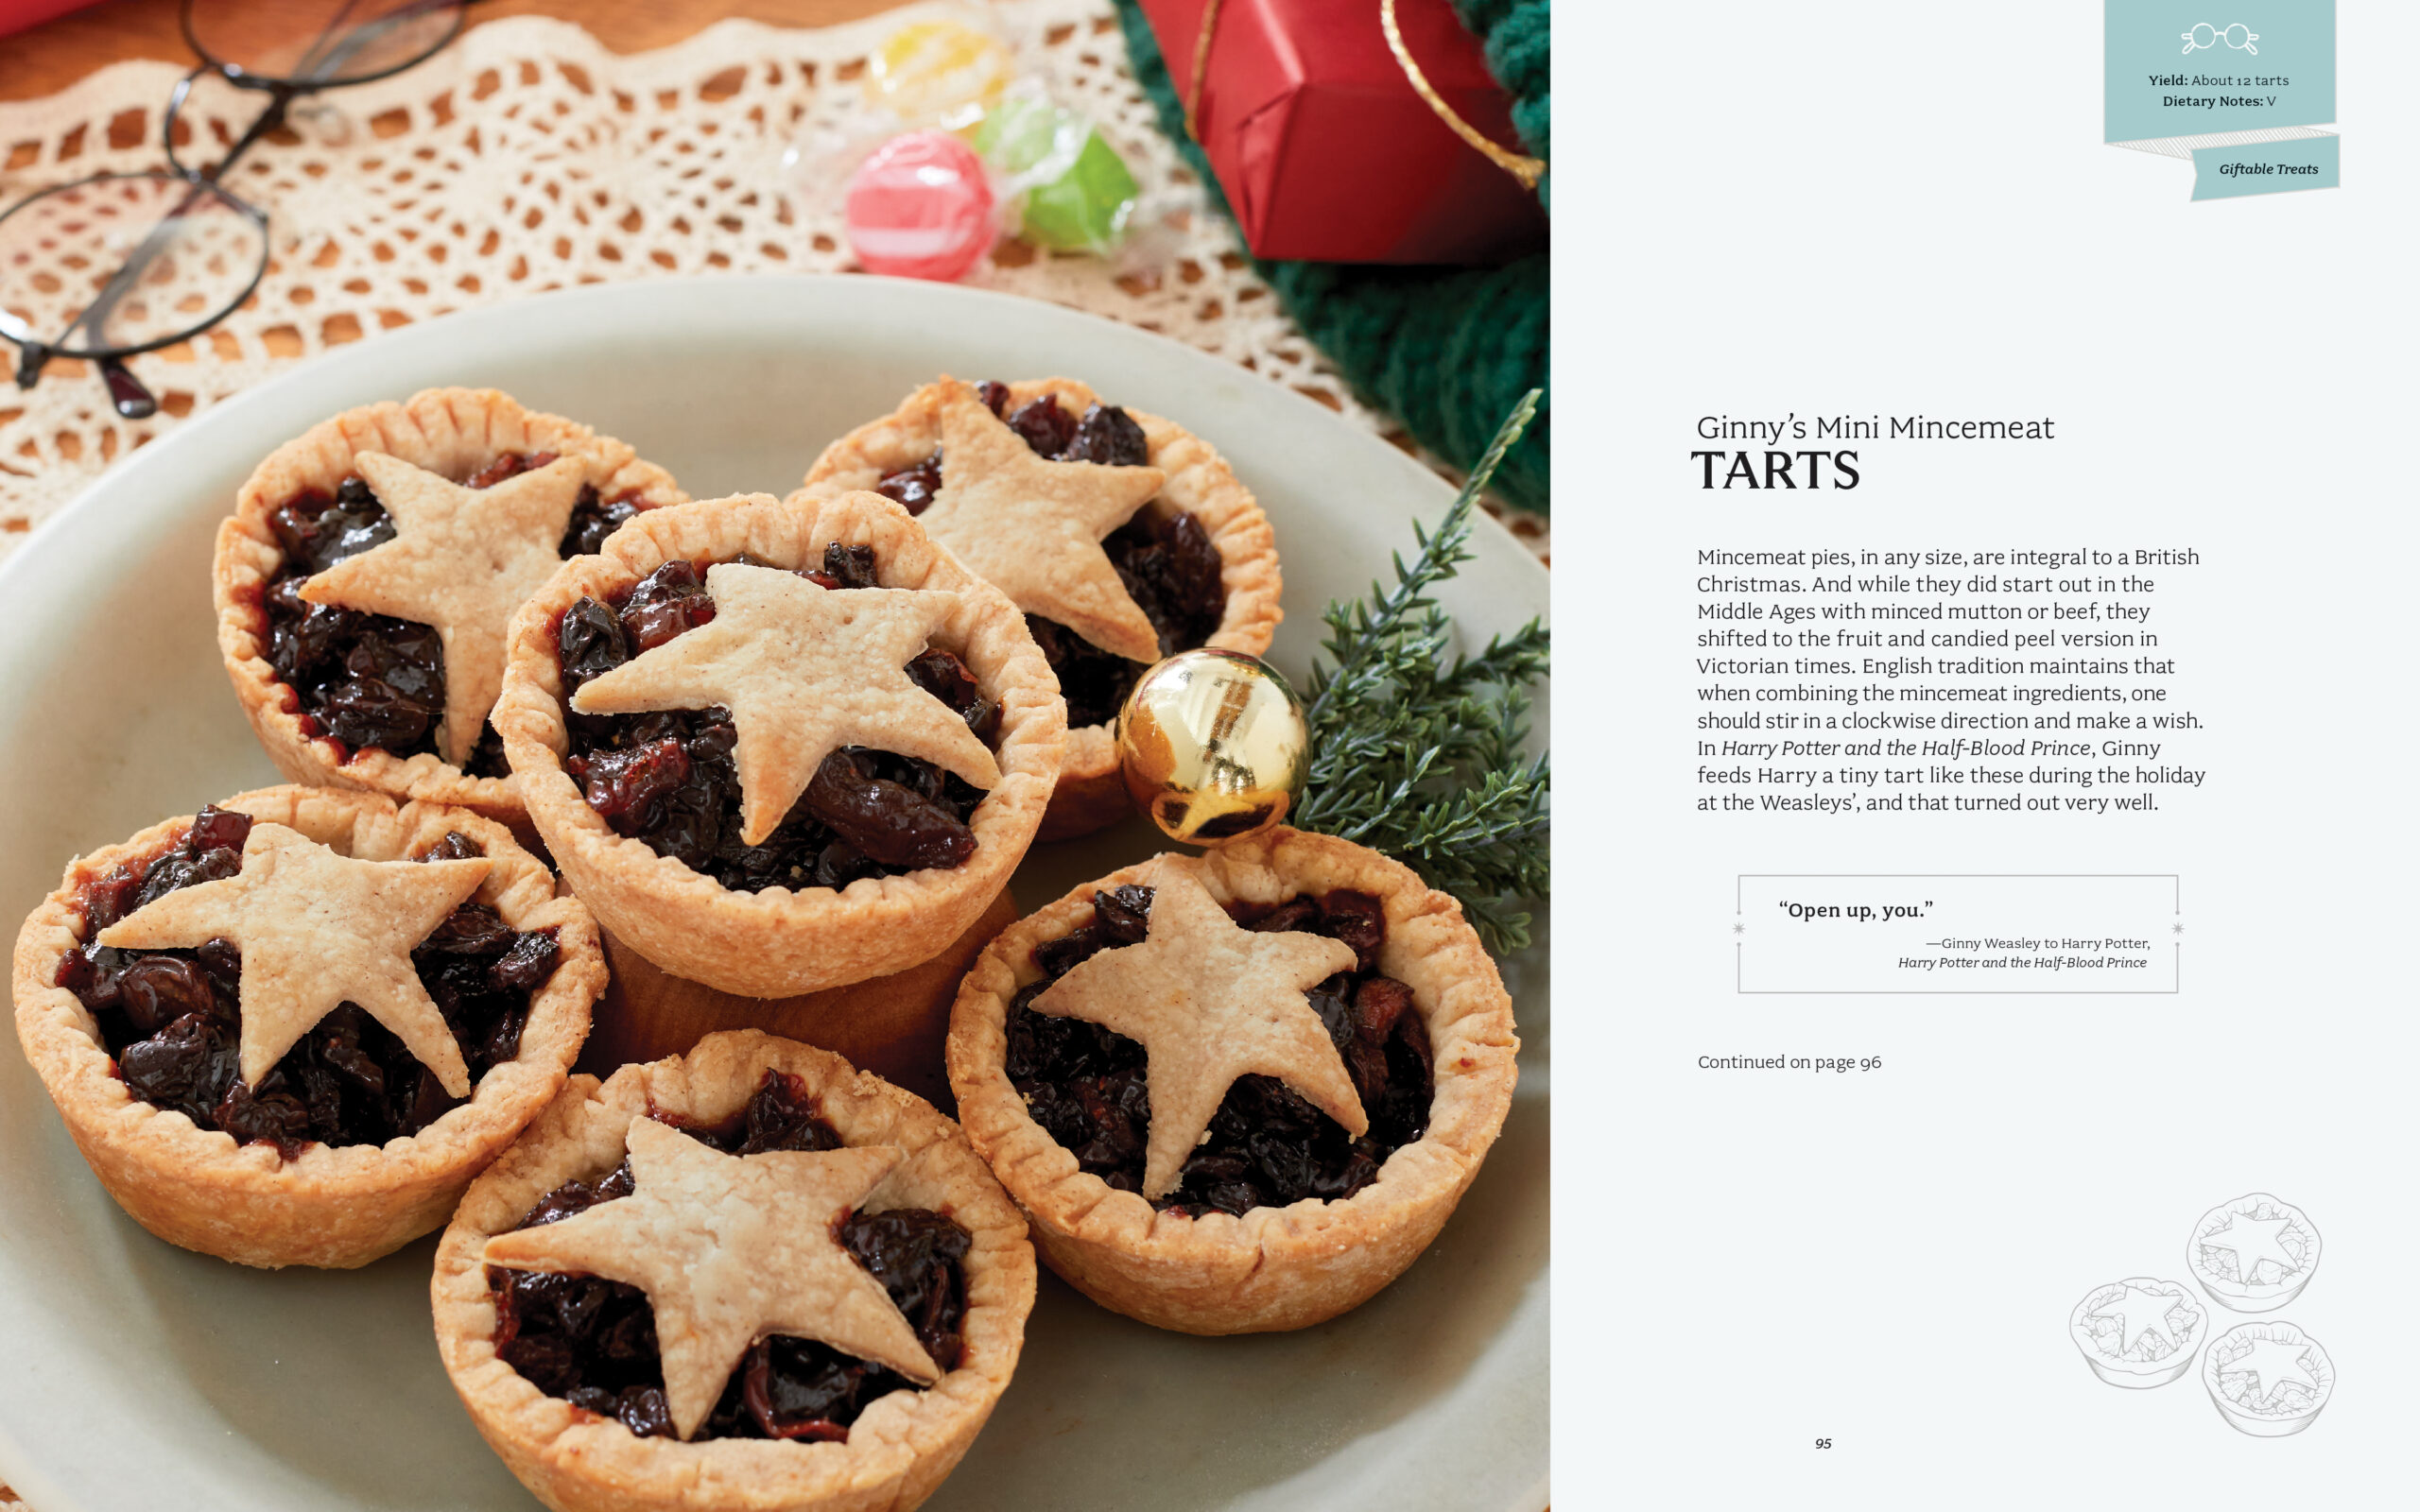 Kerstkookboek Harry Potter The Official Christmas Cookbook heeft kerstrecepten zoals deze Harry Potter mince pies